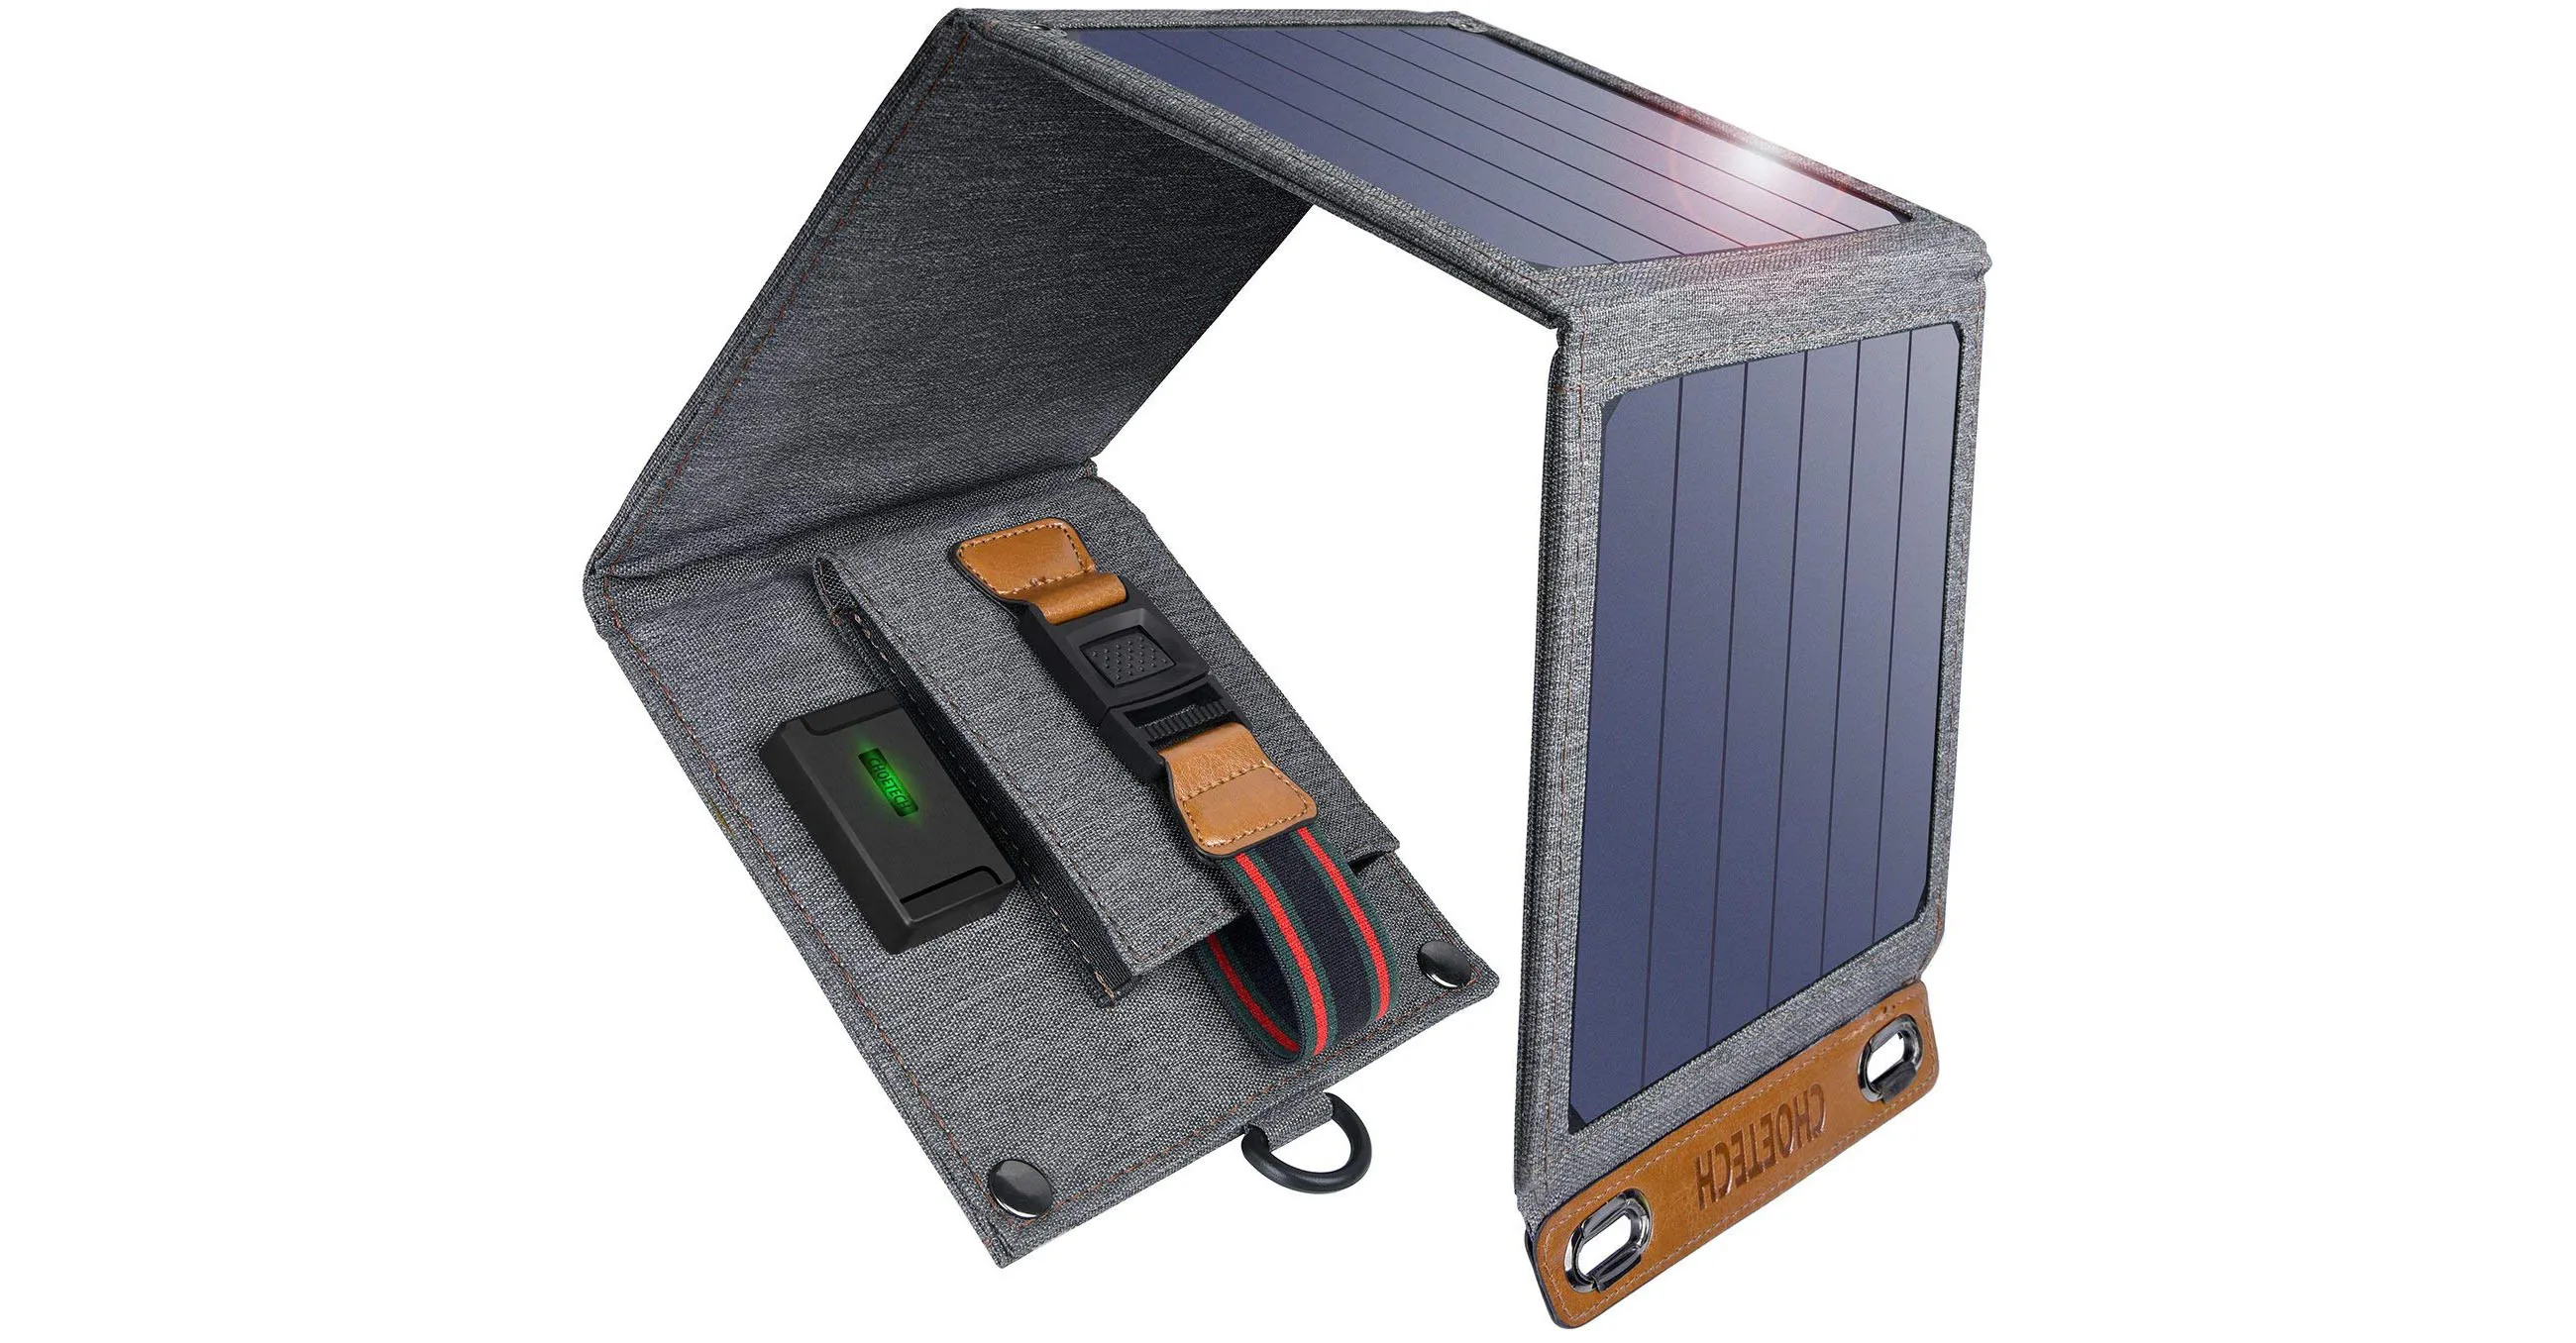 Recensione Choetech Solar Charger: caricatore solare ecologico e performante